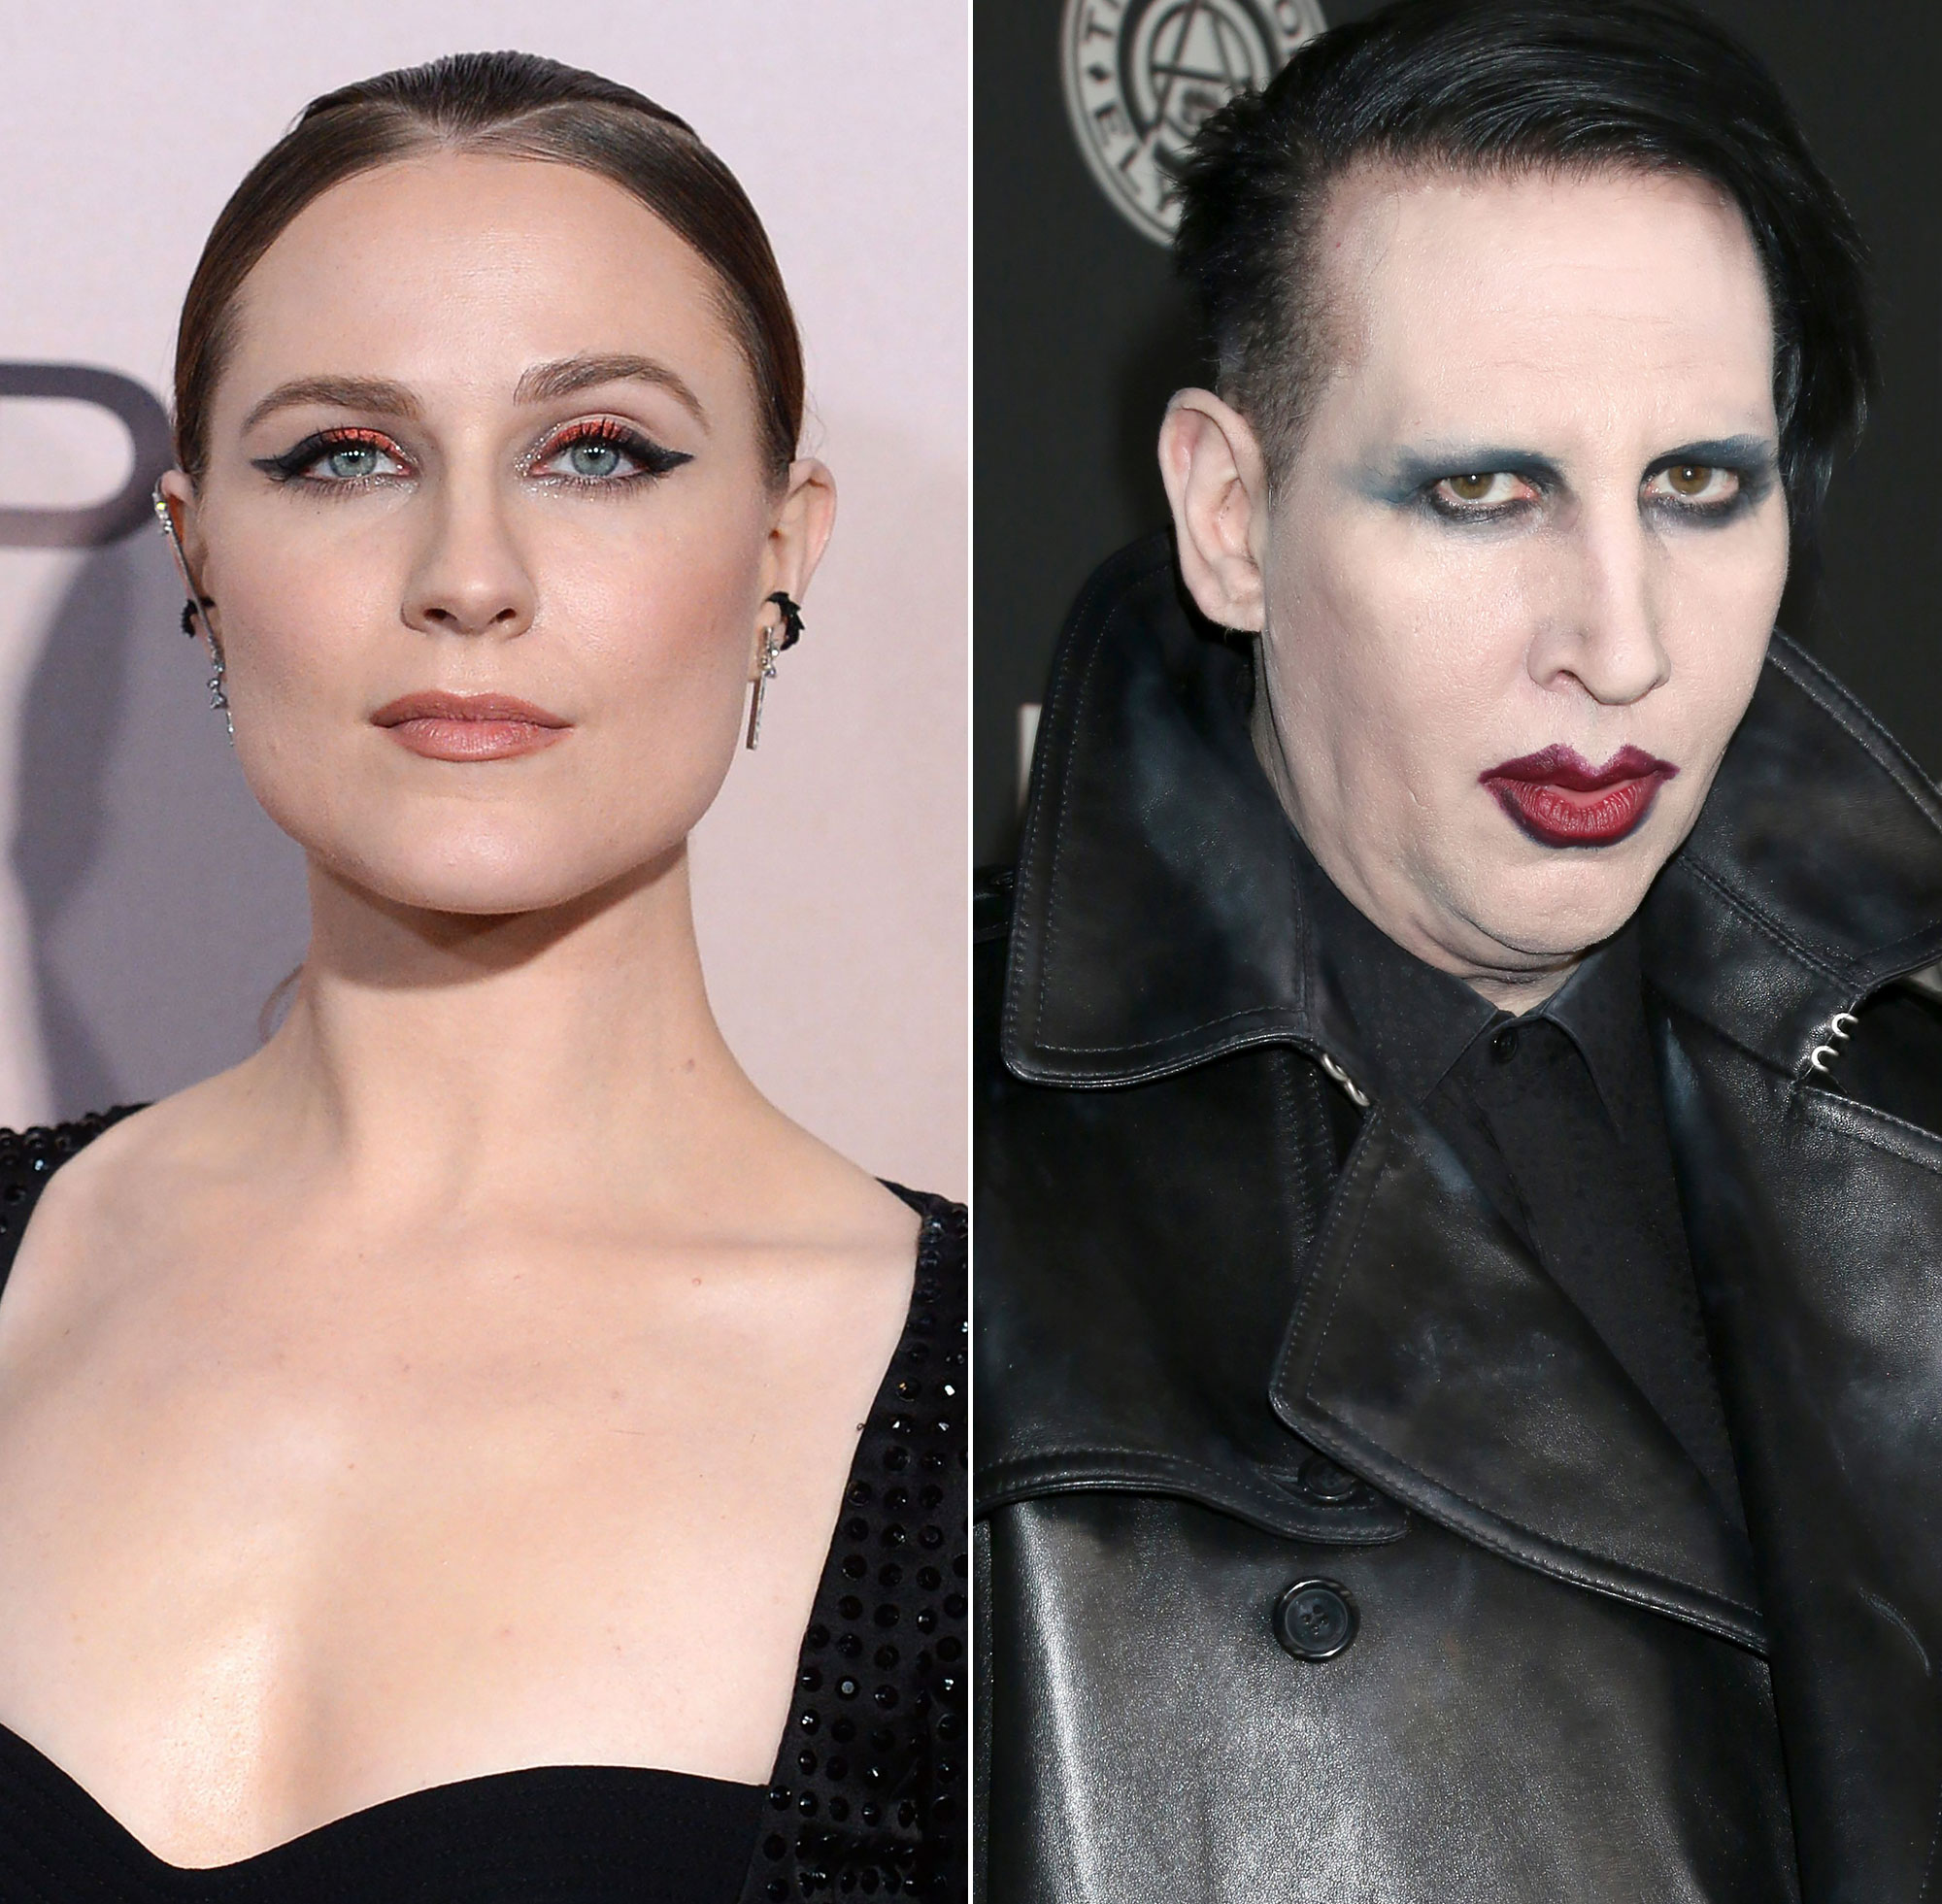 Evan Rachel Wood Accuses Ex Marilyn Manson Of Grooming Abuse